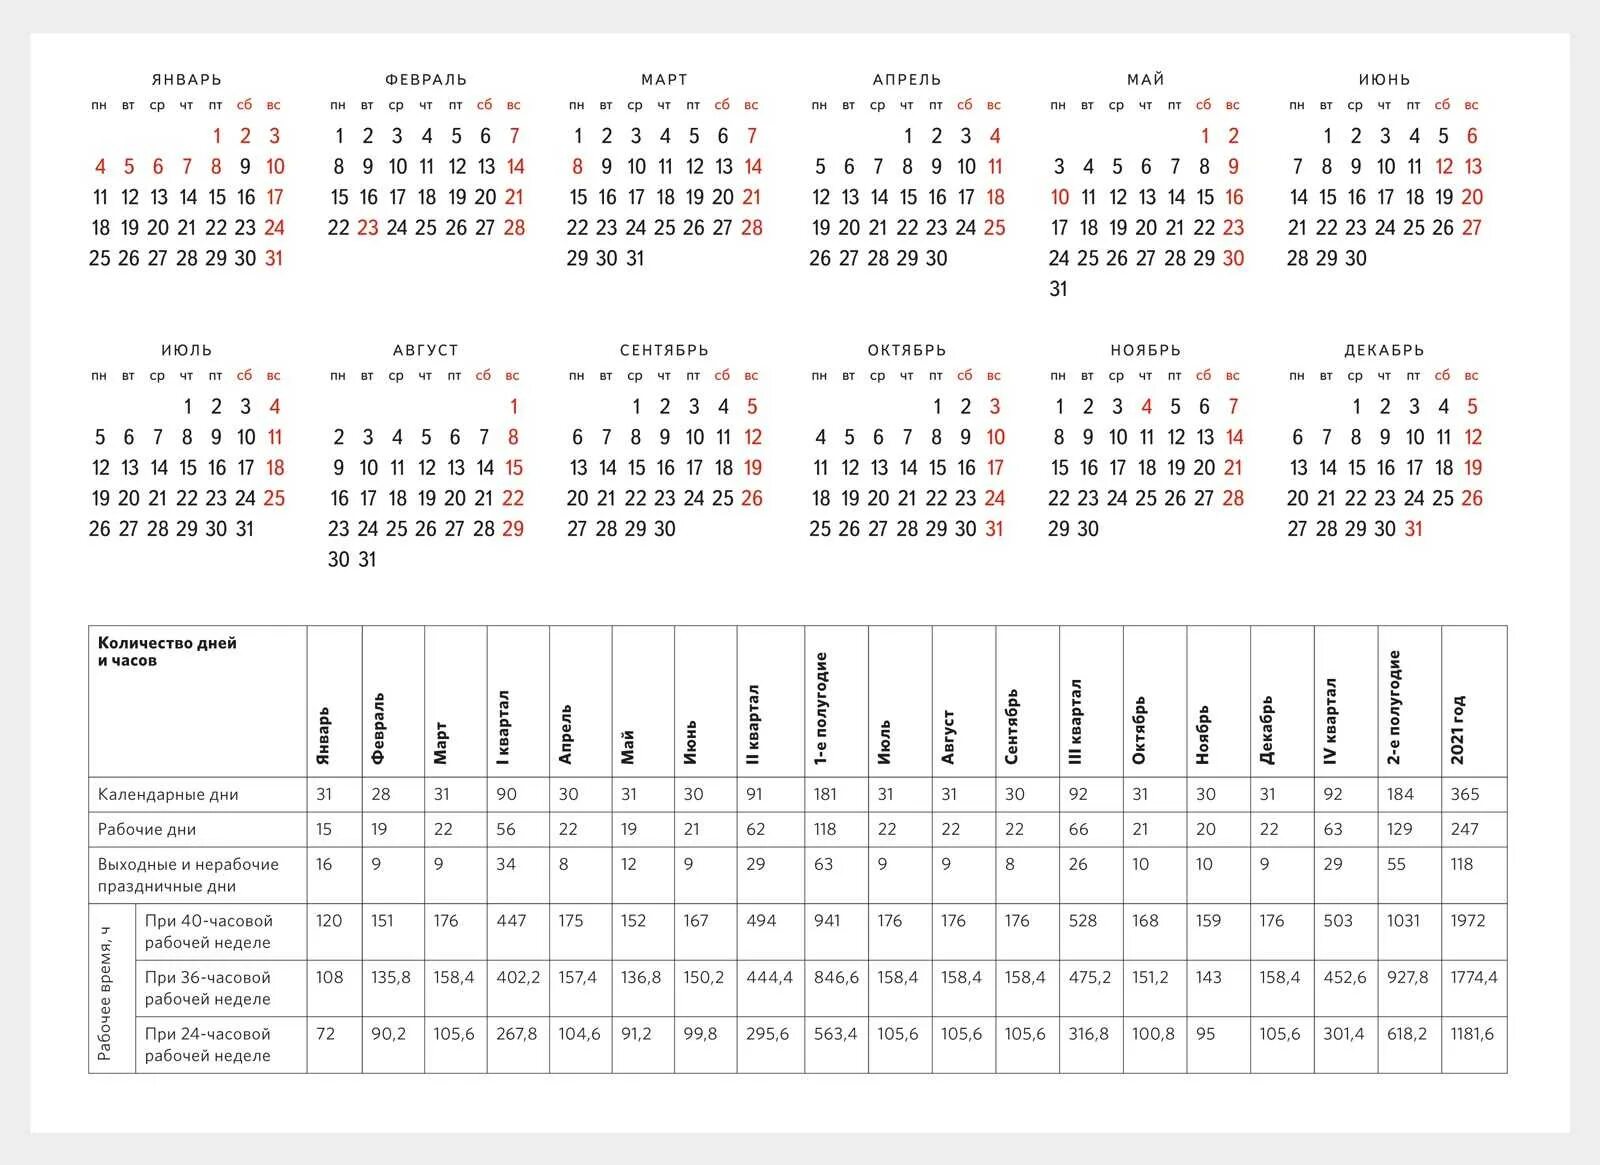 Выходные дни в татарстане в мае. Календарь 2022 дни недели сбоку. Норма рабочих часов в 2022 году. Производственный календарь на 2022 год для пятидневной рабочей недели. Календарь на 2022 год с праздниками и выходными выходные снизу.